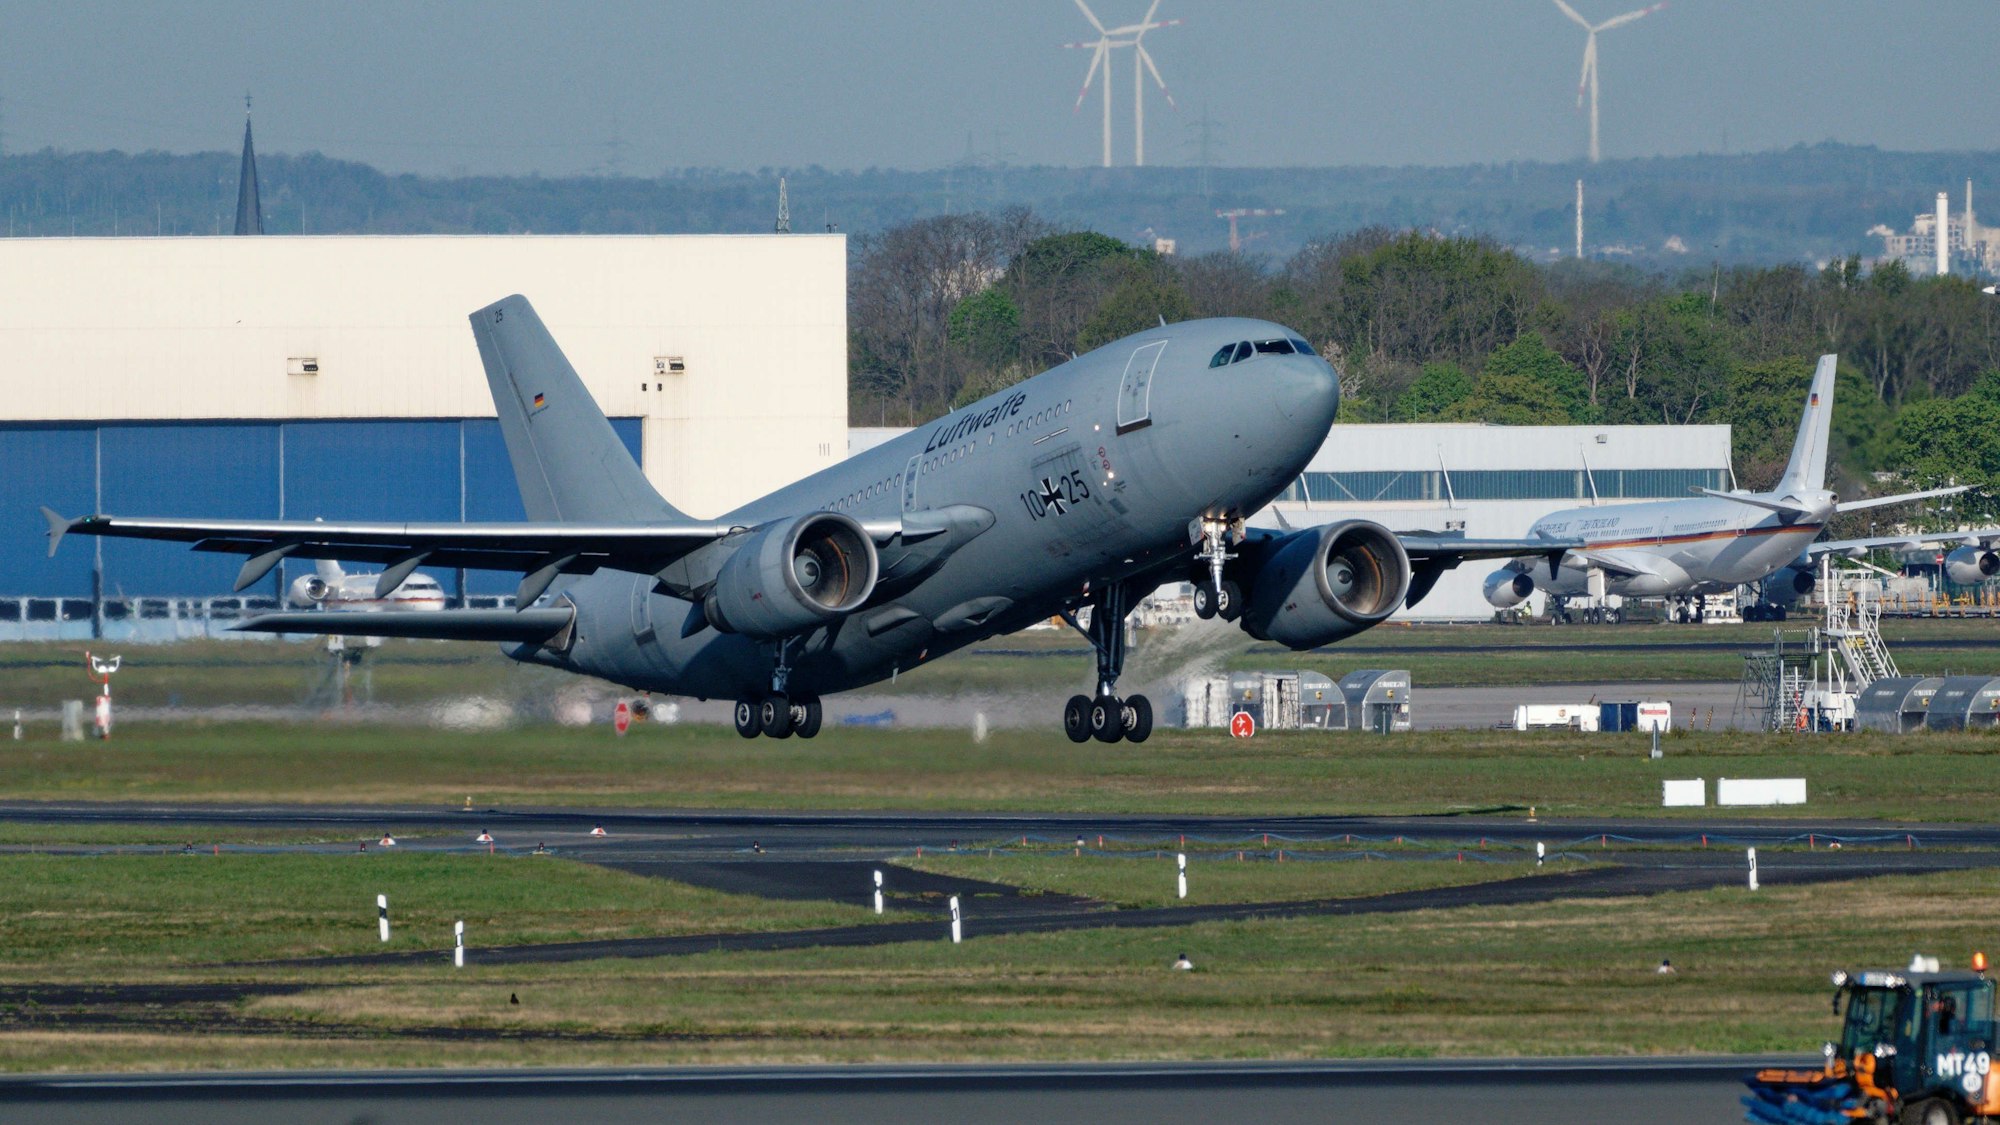 Ein Airbus A310 MedEvac der Bundeswehr startet vom Flughafen Köln/Bonn, um kriegsverletzte Ukrainer nach Deutschland zu holen.